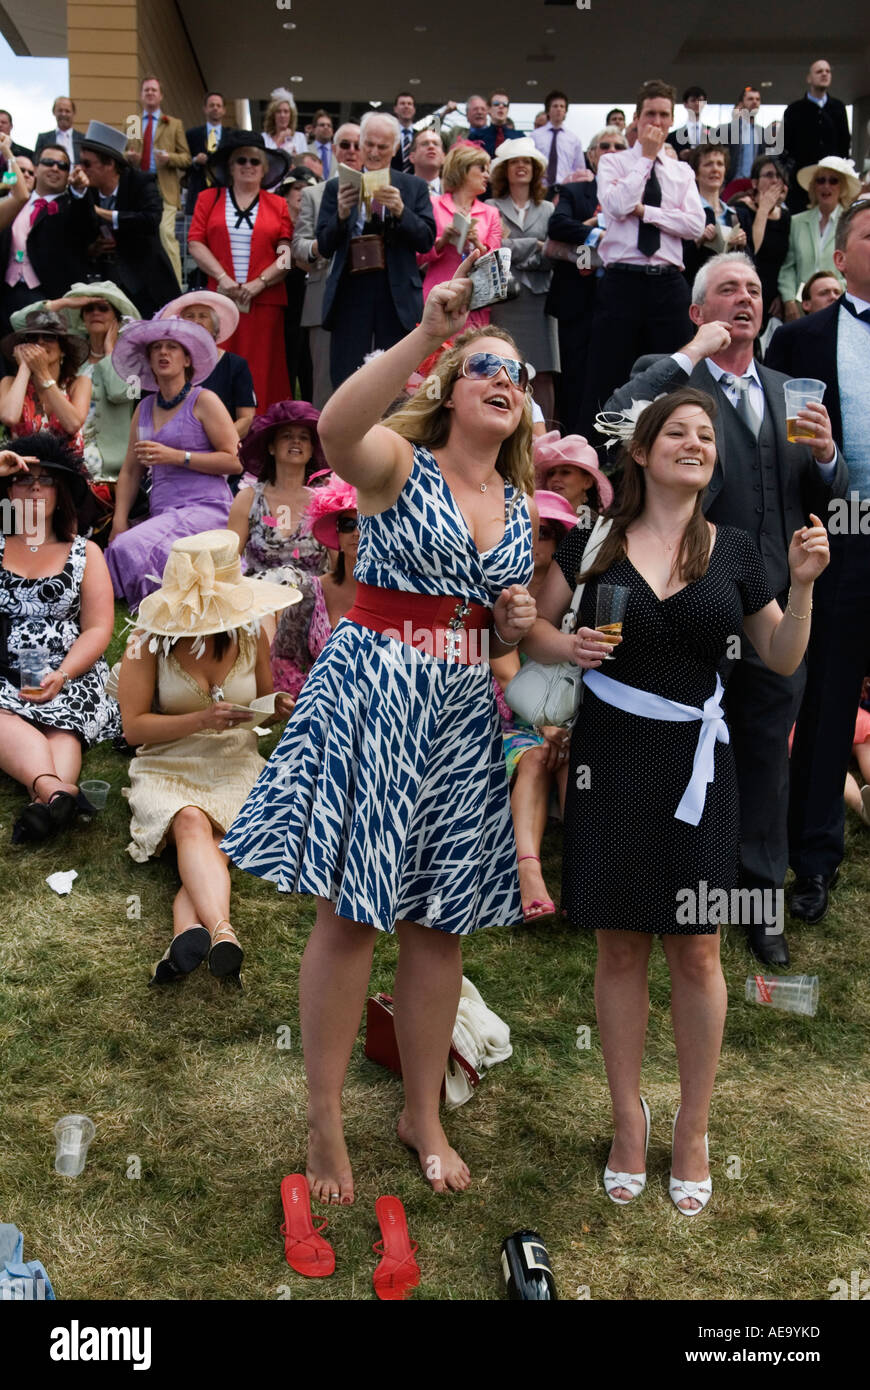 Royal Ascot, deux jeunes femmes qui s'amusent une journée aux courses. Royal Ascot, courses hippiques. Berkshire UK. HOMER SYKES des années 2006 2000. Banque D'Images